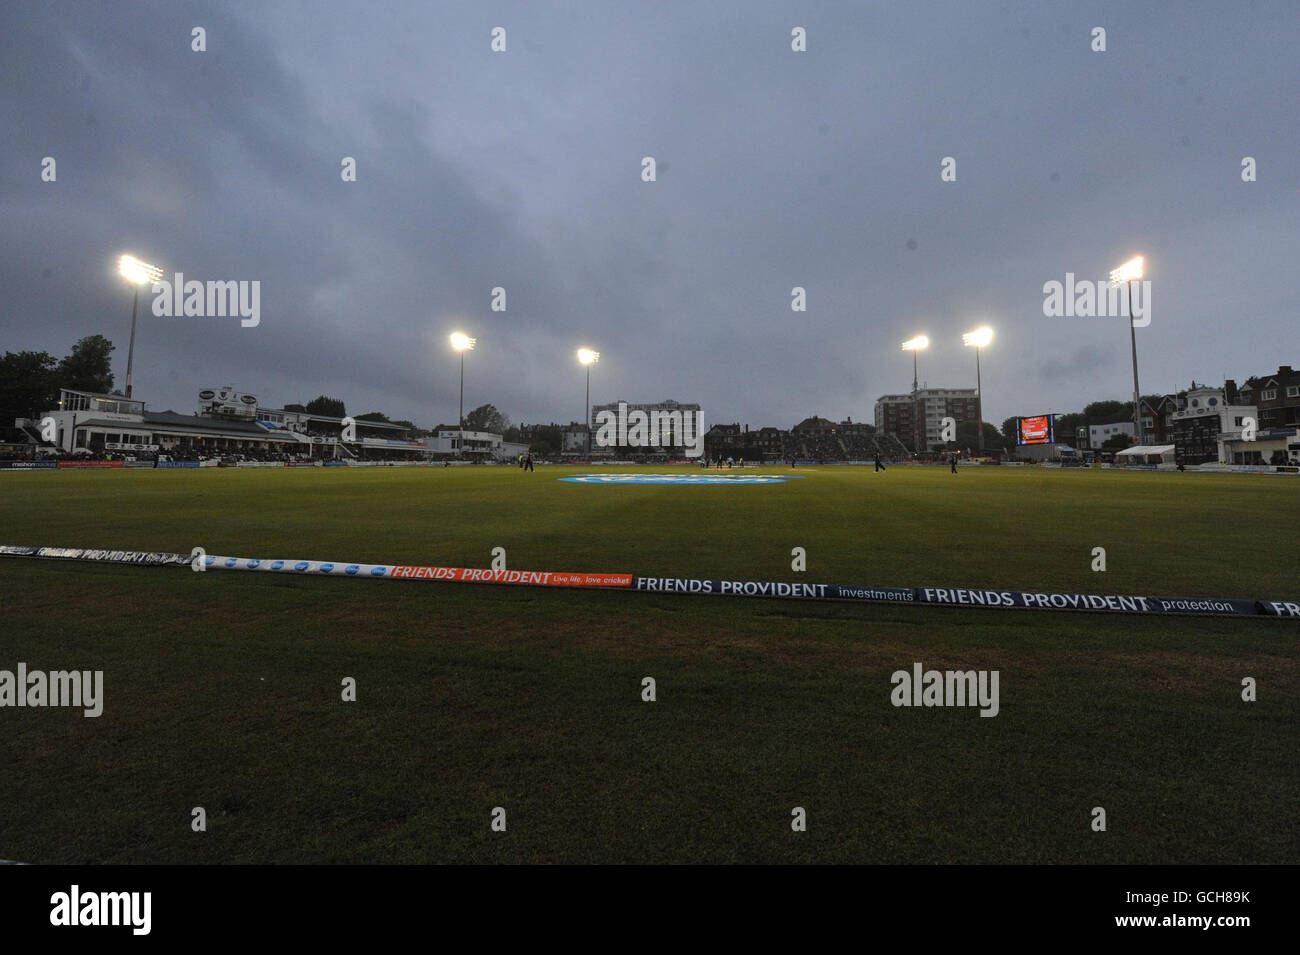 Cricket - Friends Provident T20 - Sussex v Somerset - County Ground. Una visione generale durante la partita degli amici provvidenti T20 al County Ground, Hove. Foto Stock